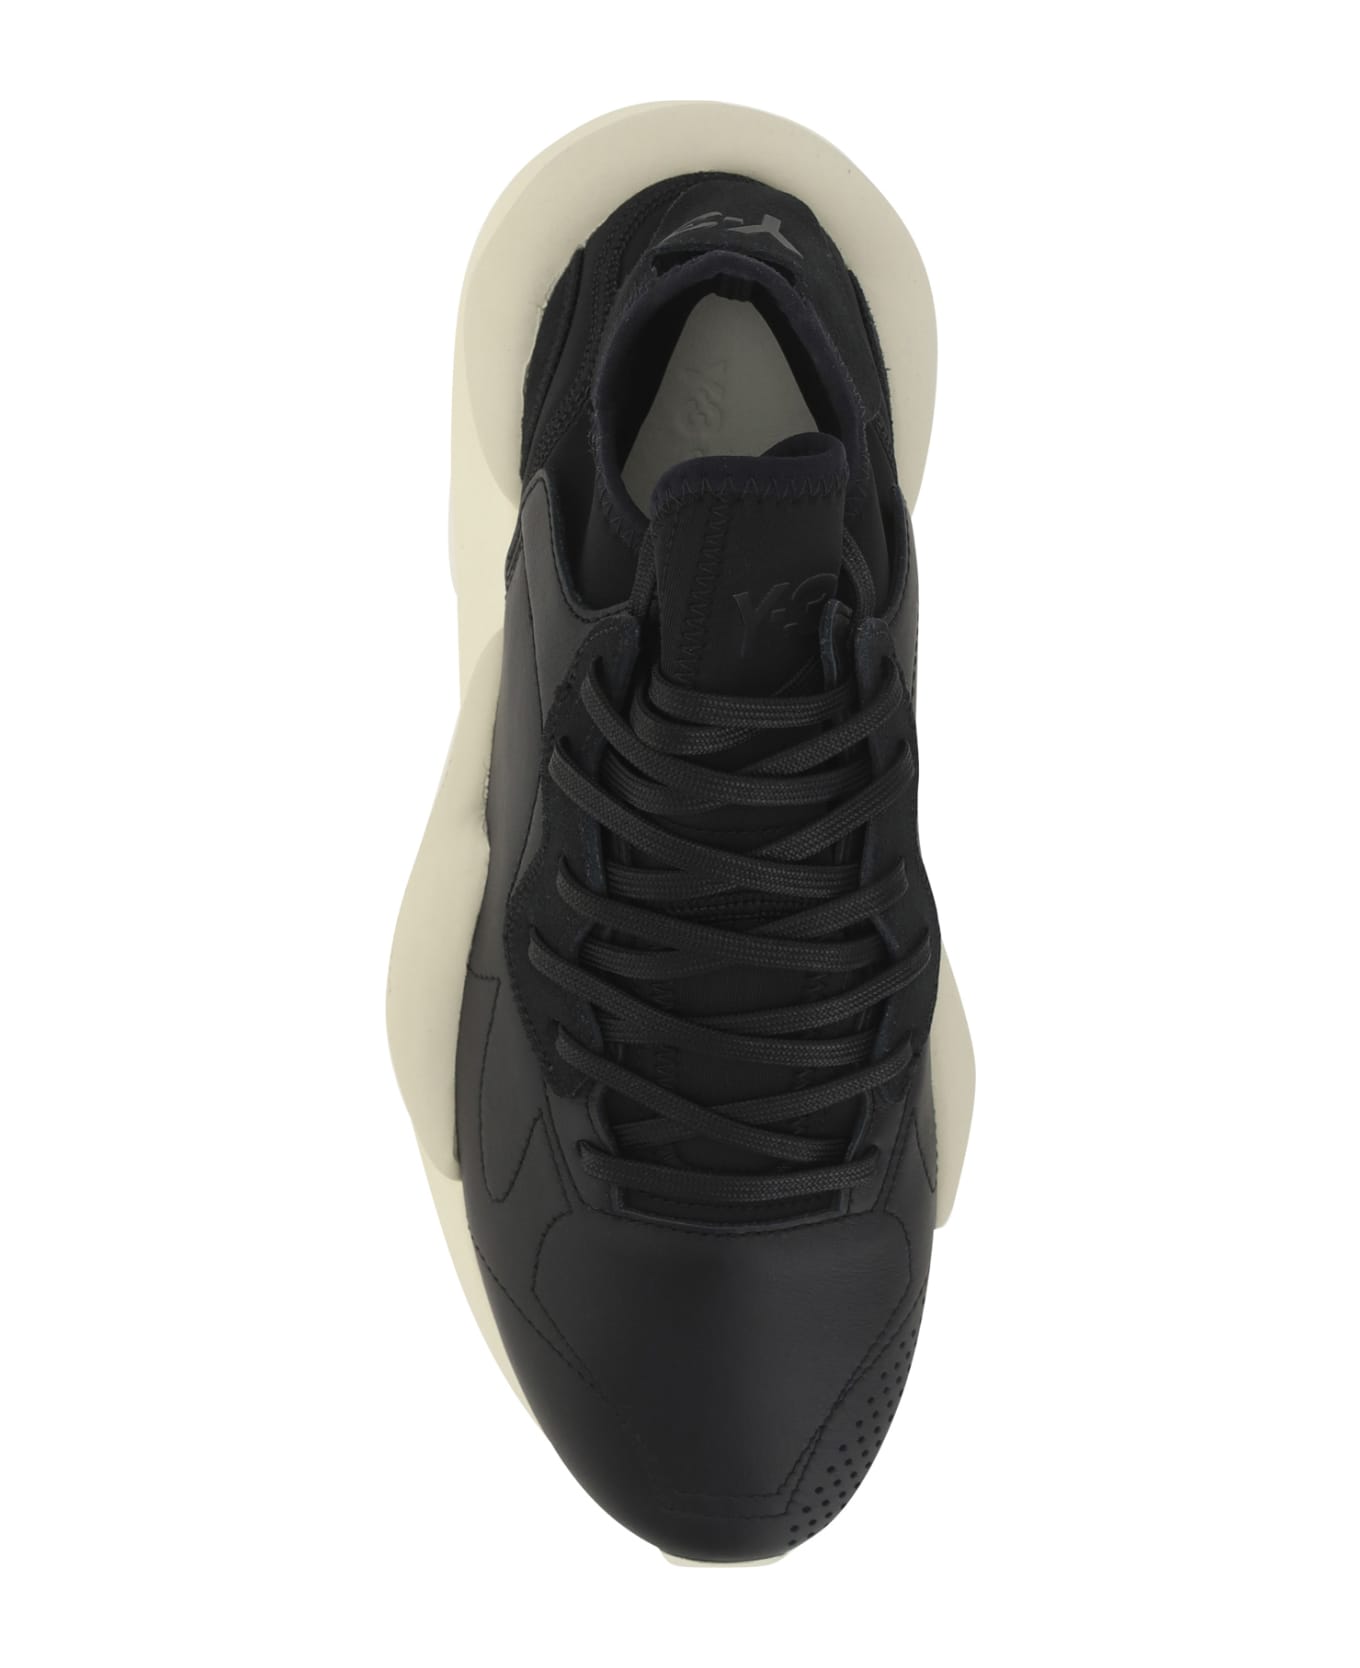 Y-3 Kaiwa Sneakers - Black/owhite/cbro